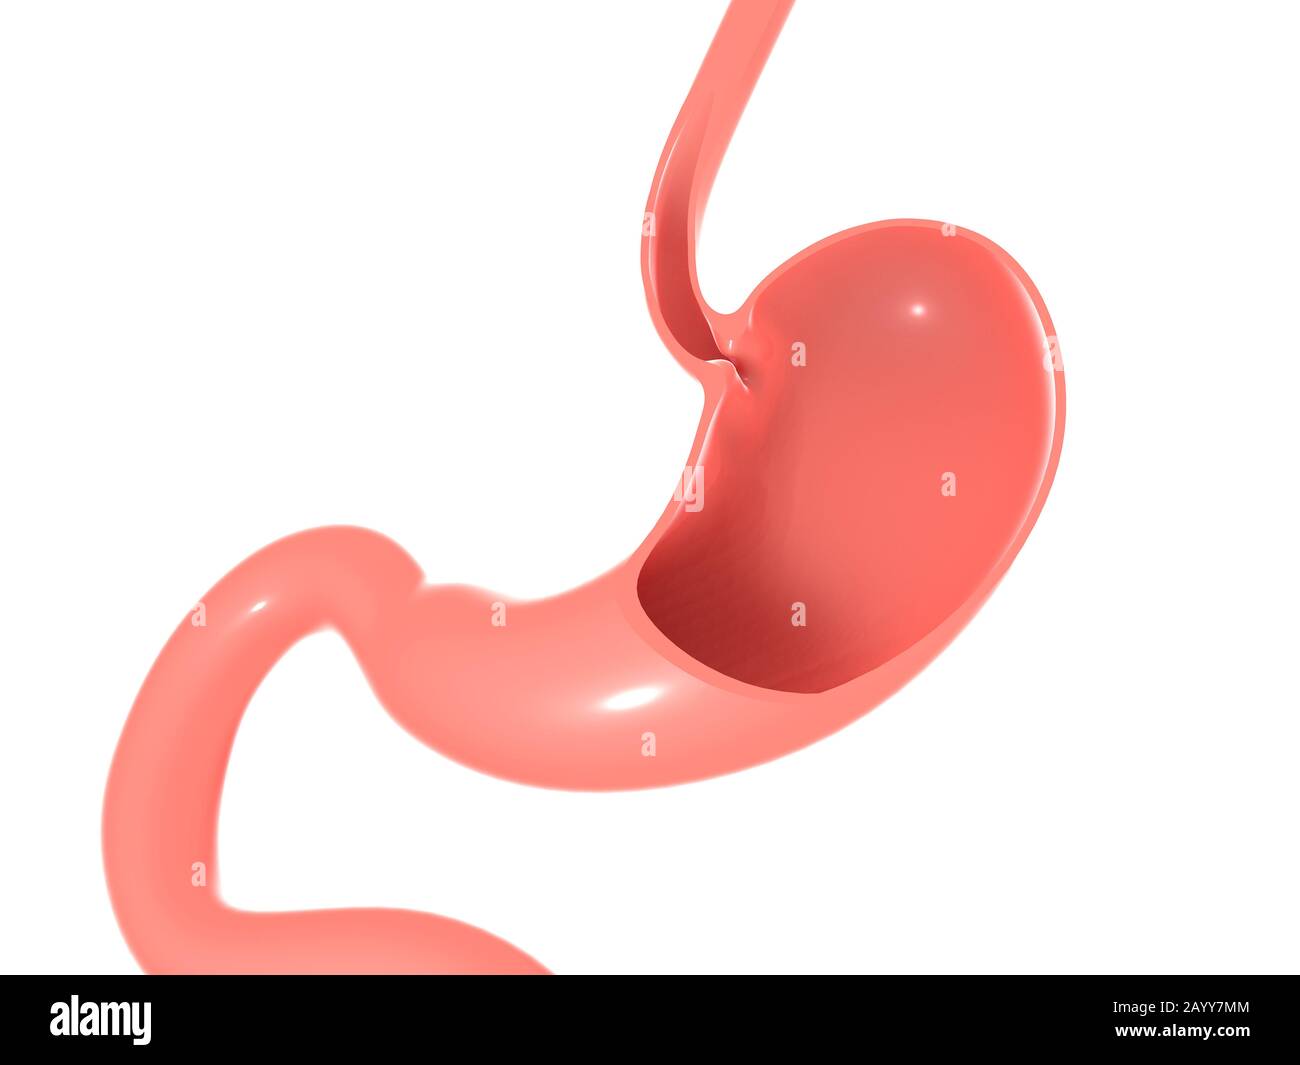 3D illustrazione dell'anatomia dello stomaco umano, dell'esofago e dell'intestino. Sezione vuota che mostra l'interno vuoto. Foto Stock